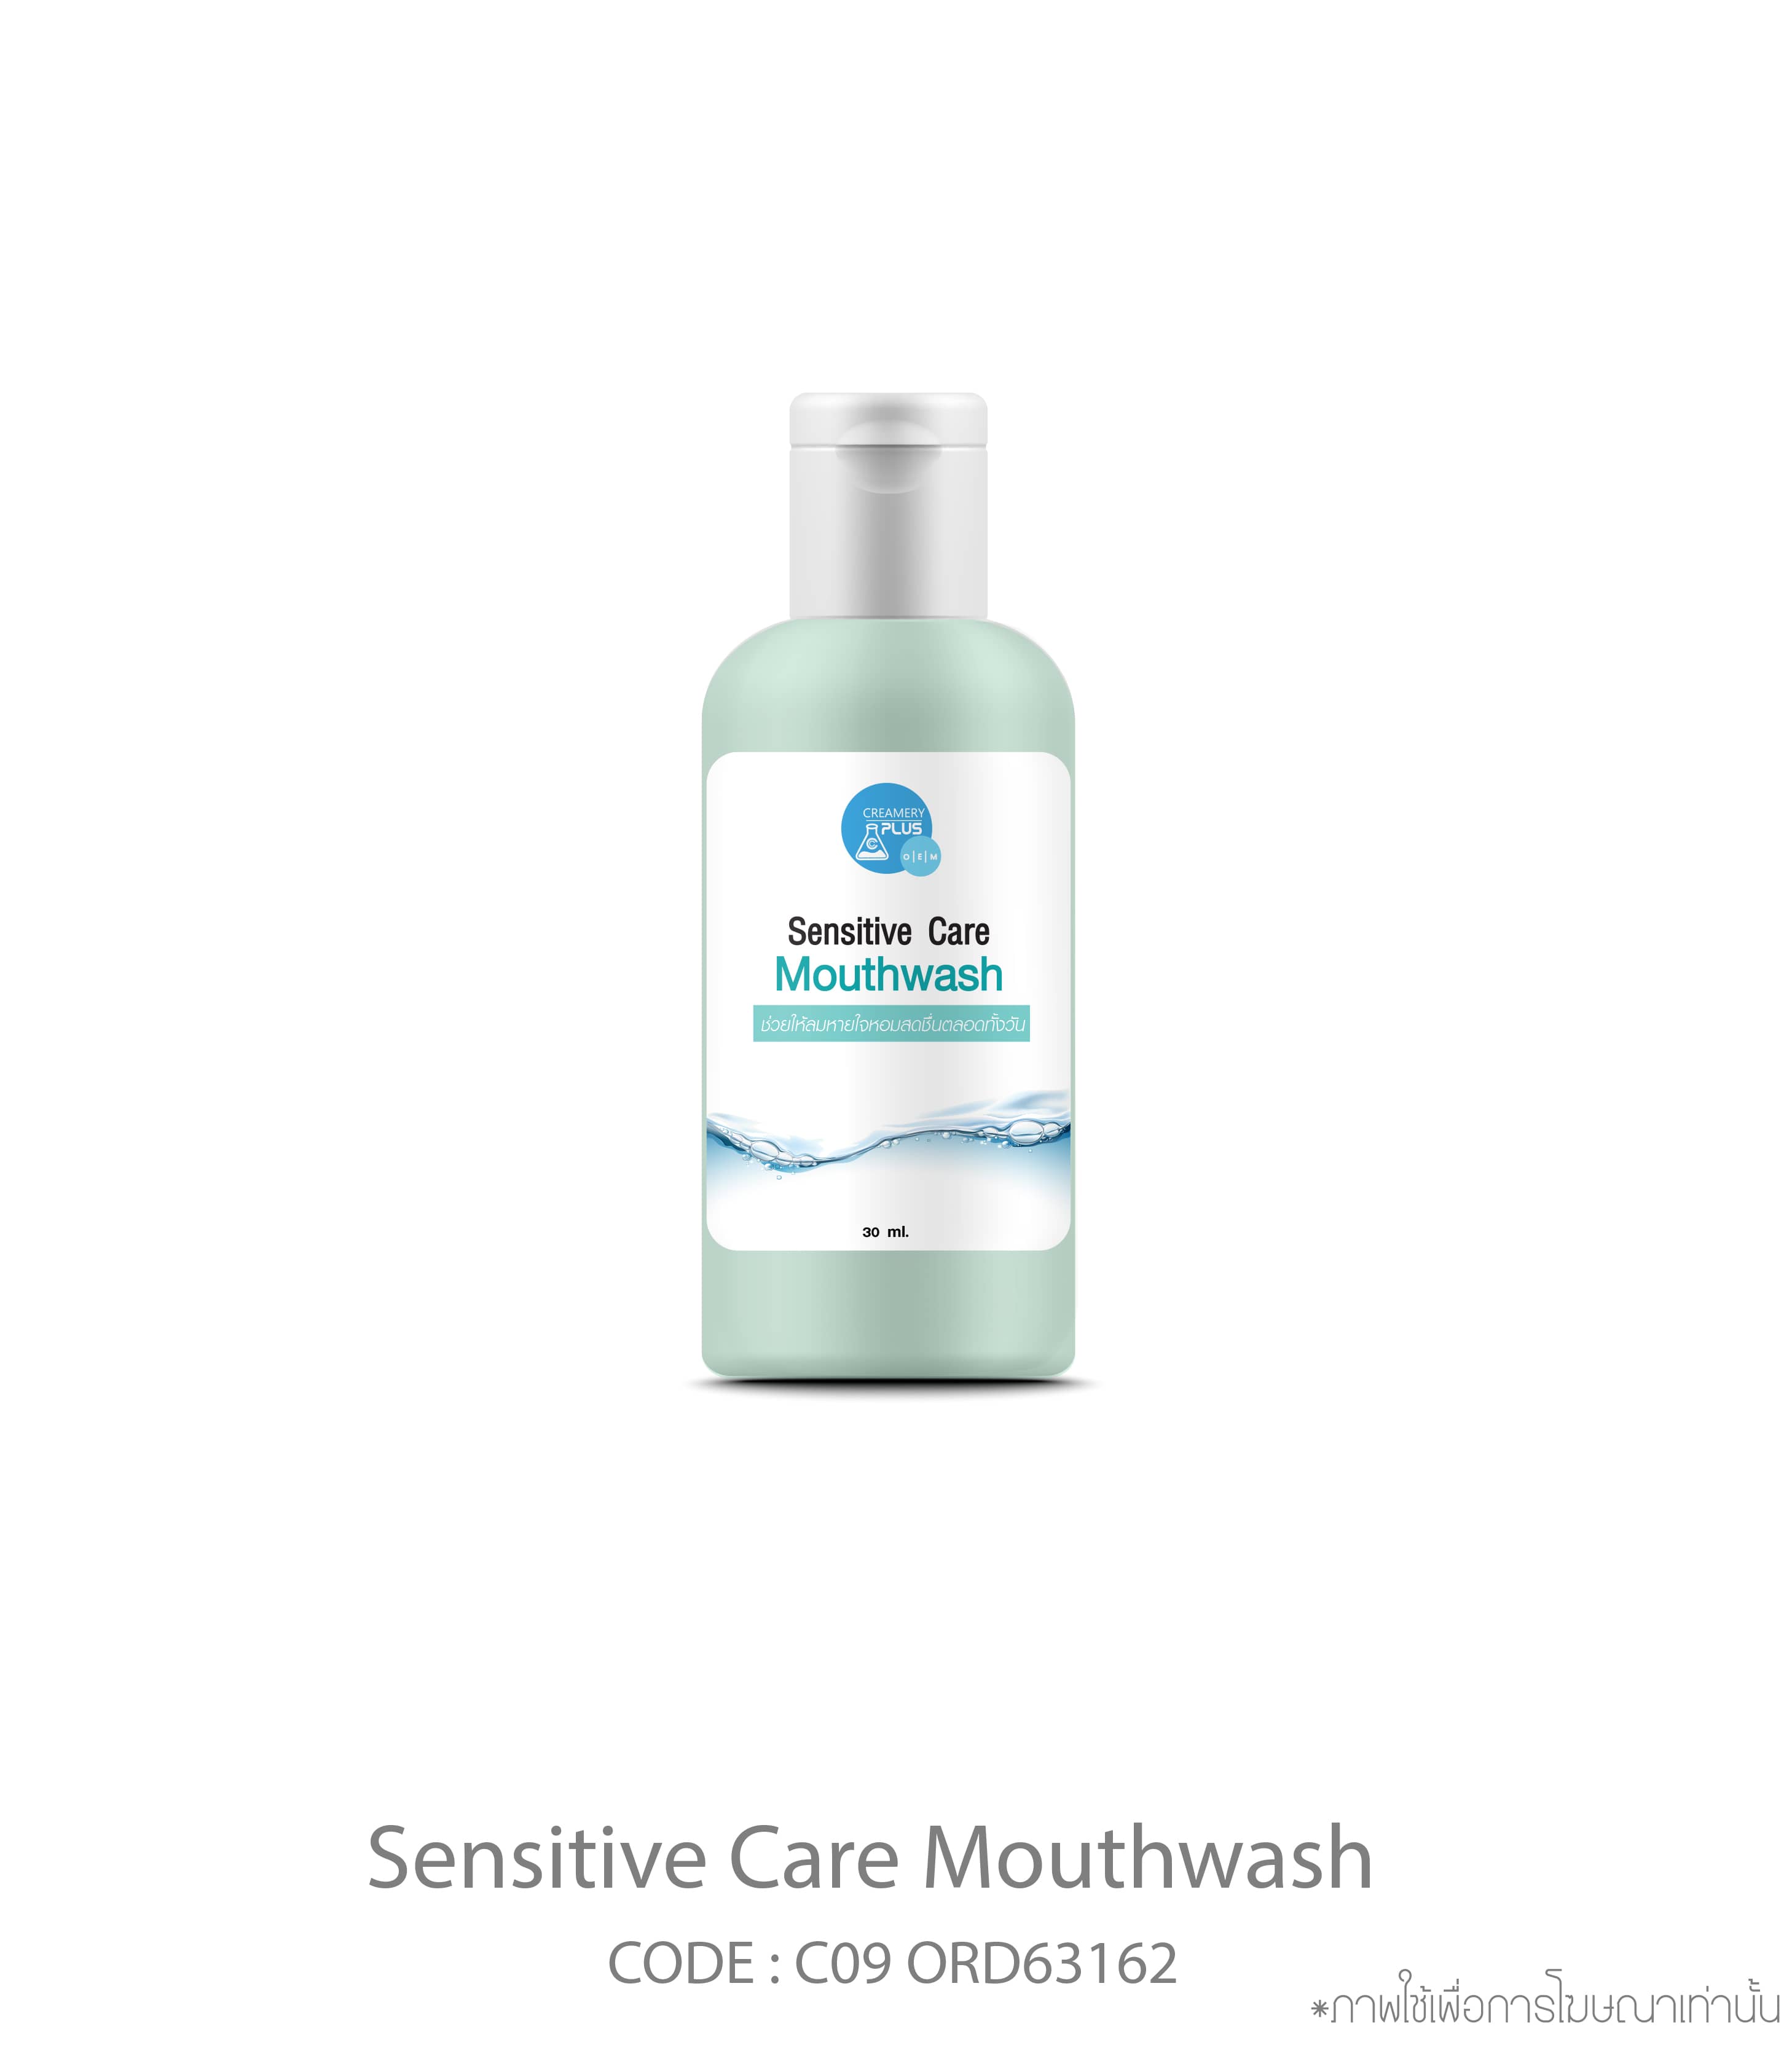 Sensitive Care Mouthwash